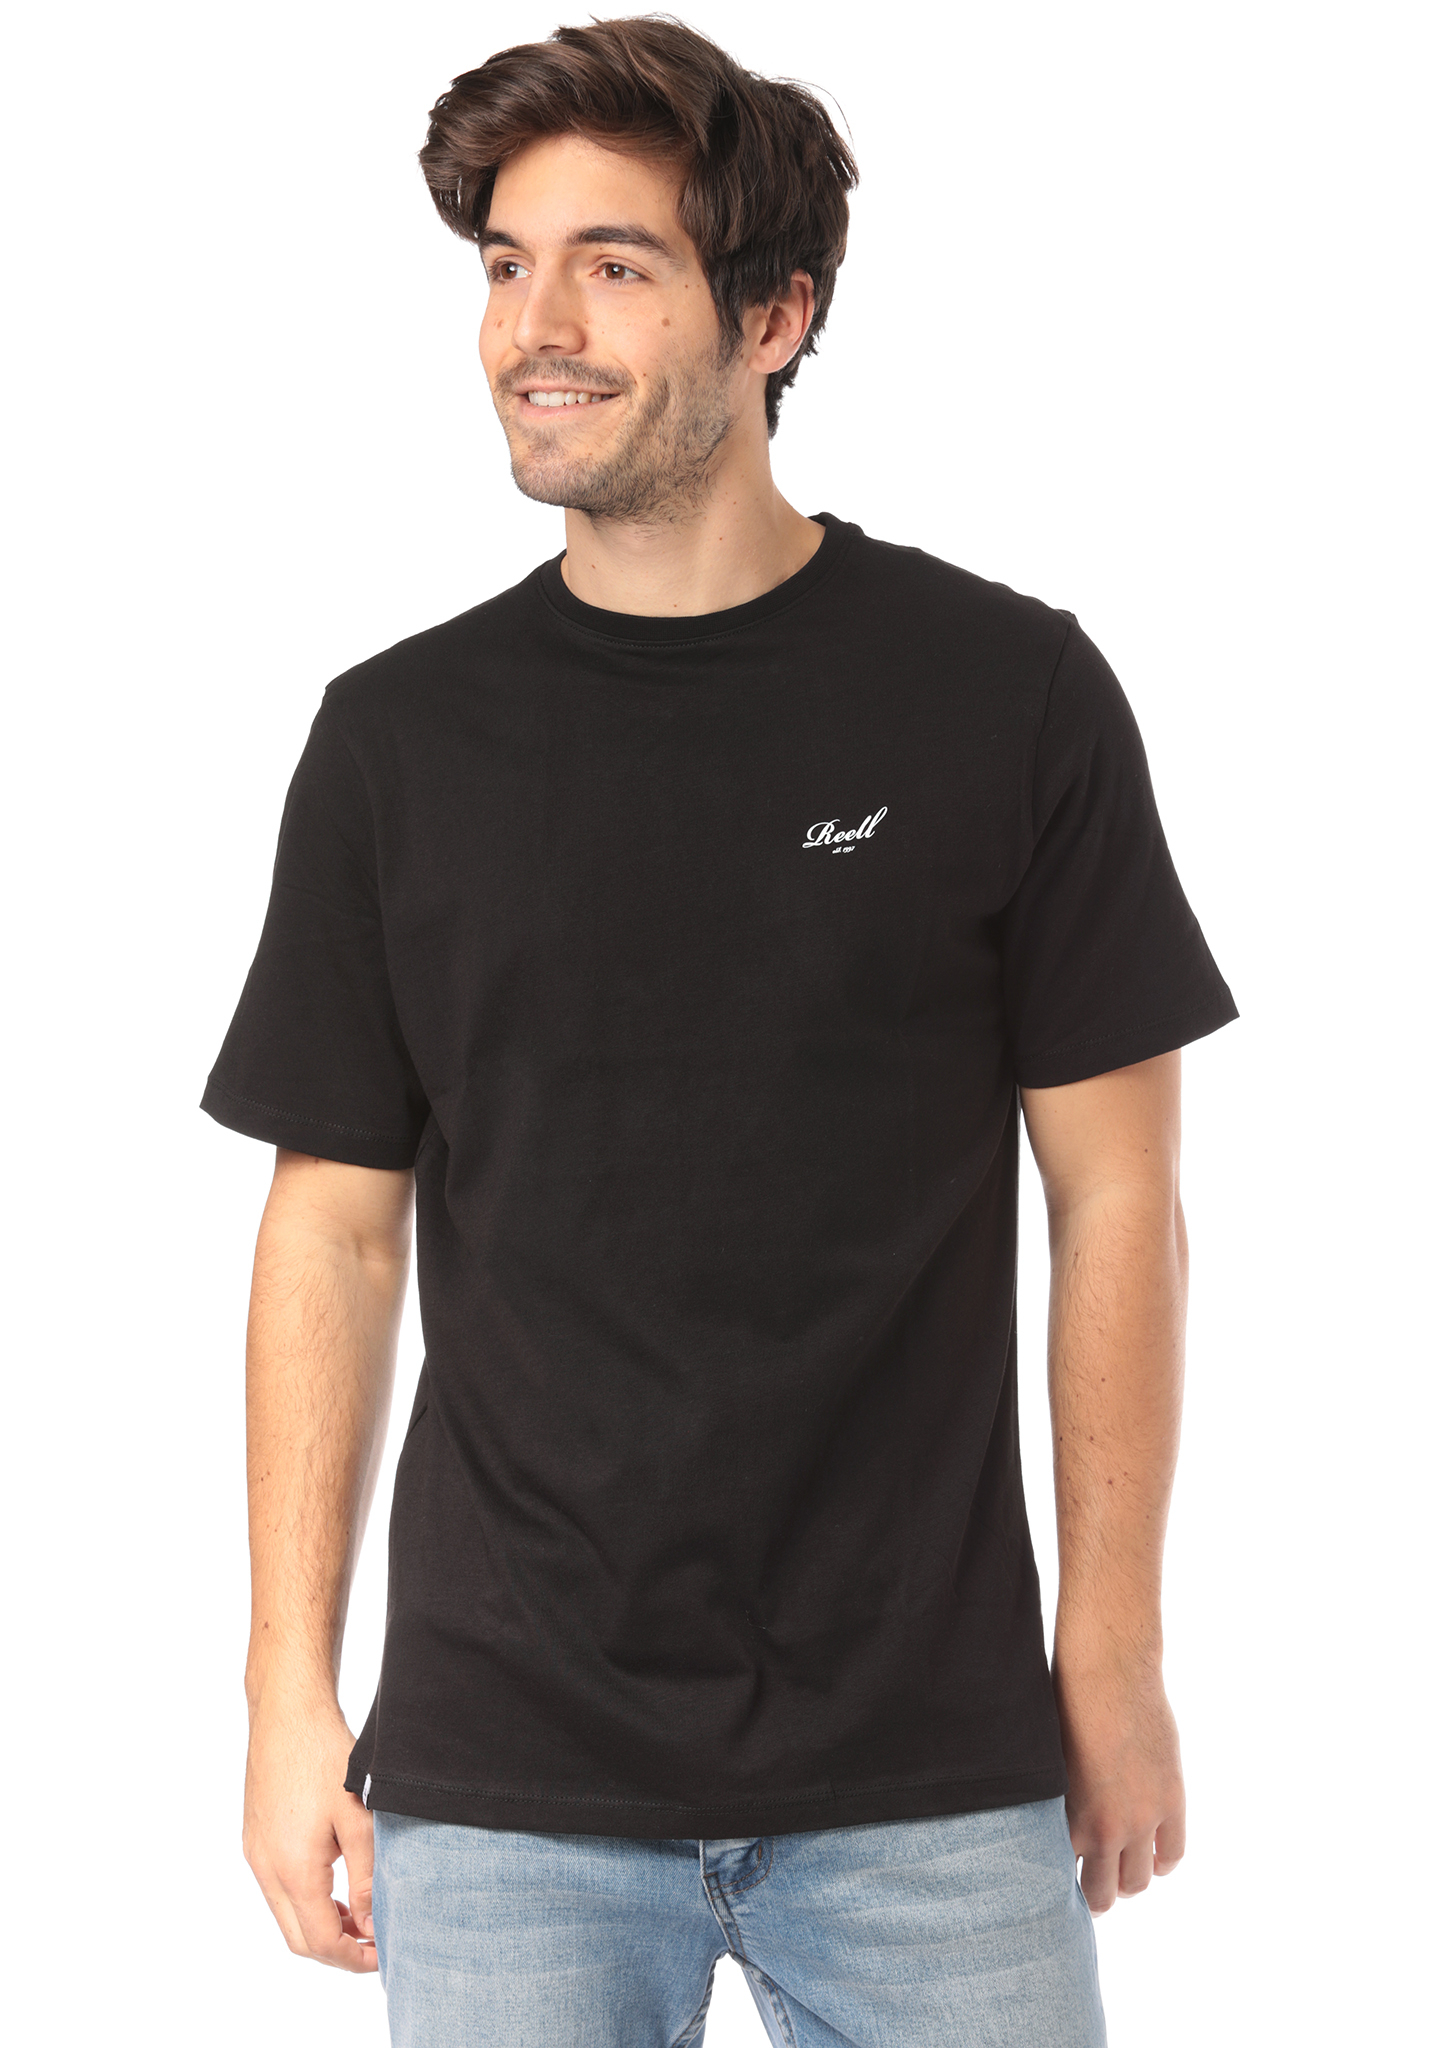 Reell Small Script T-Shirt black XL